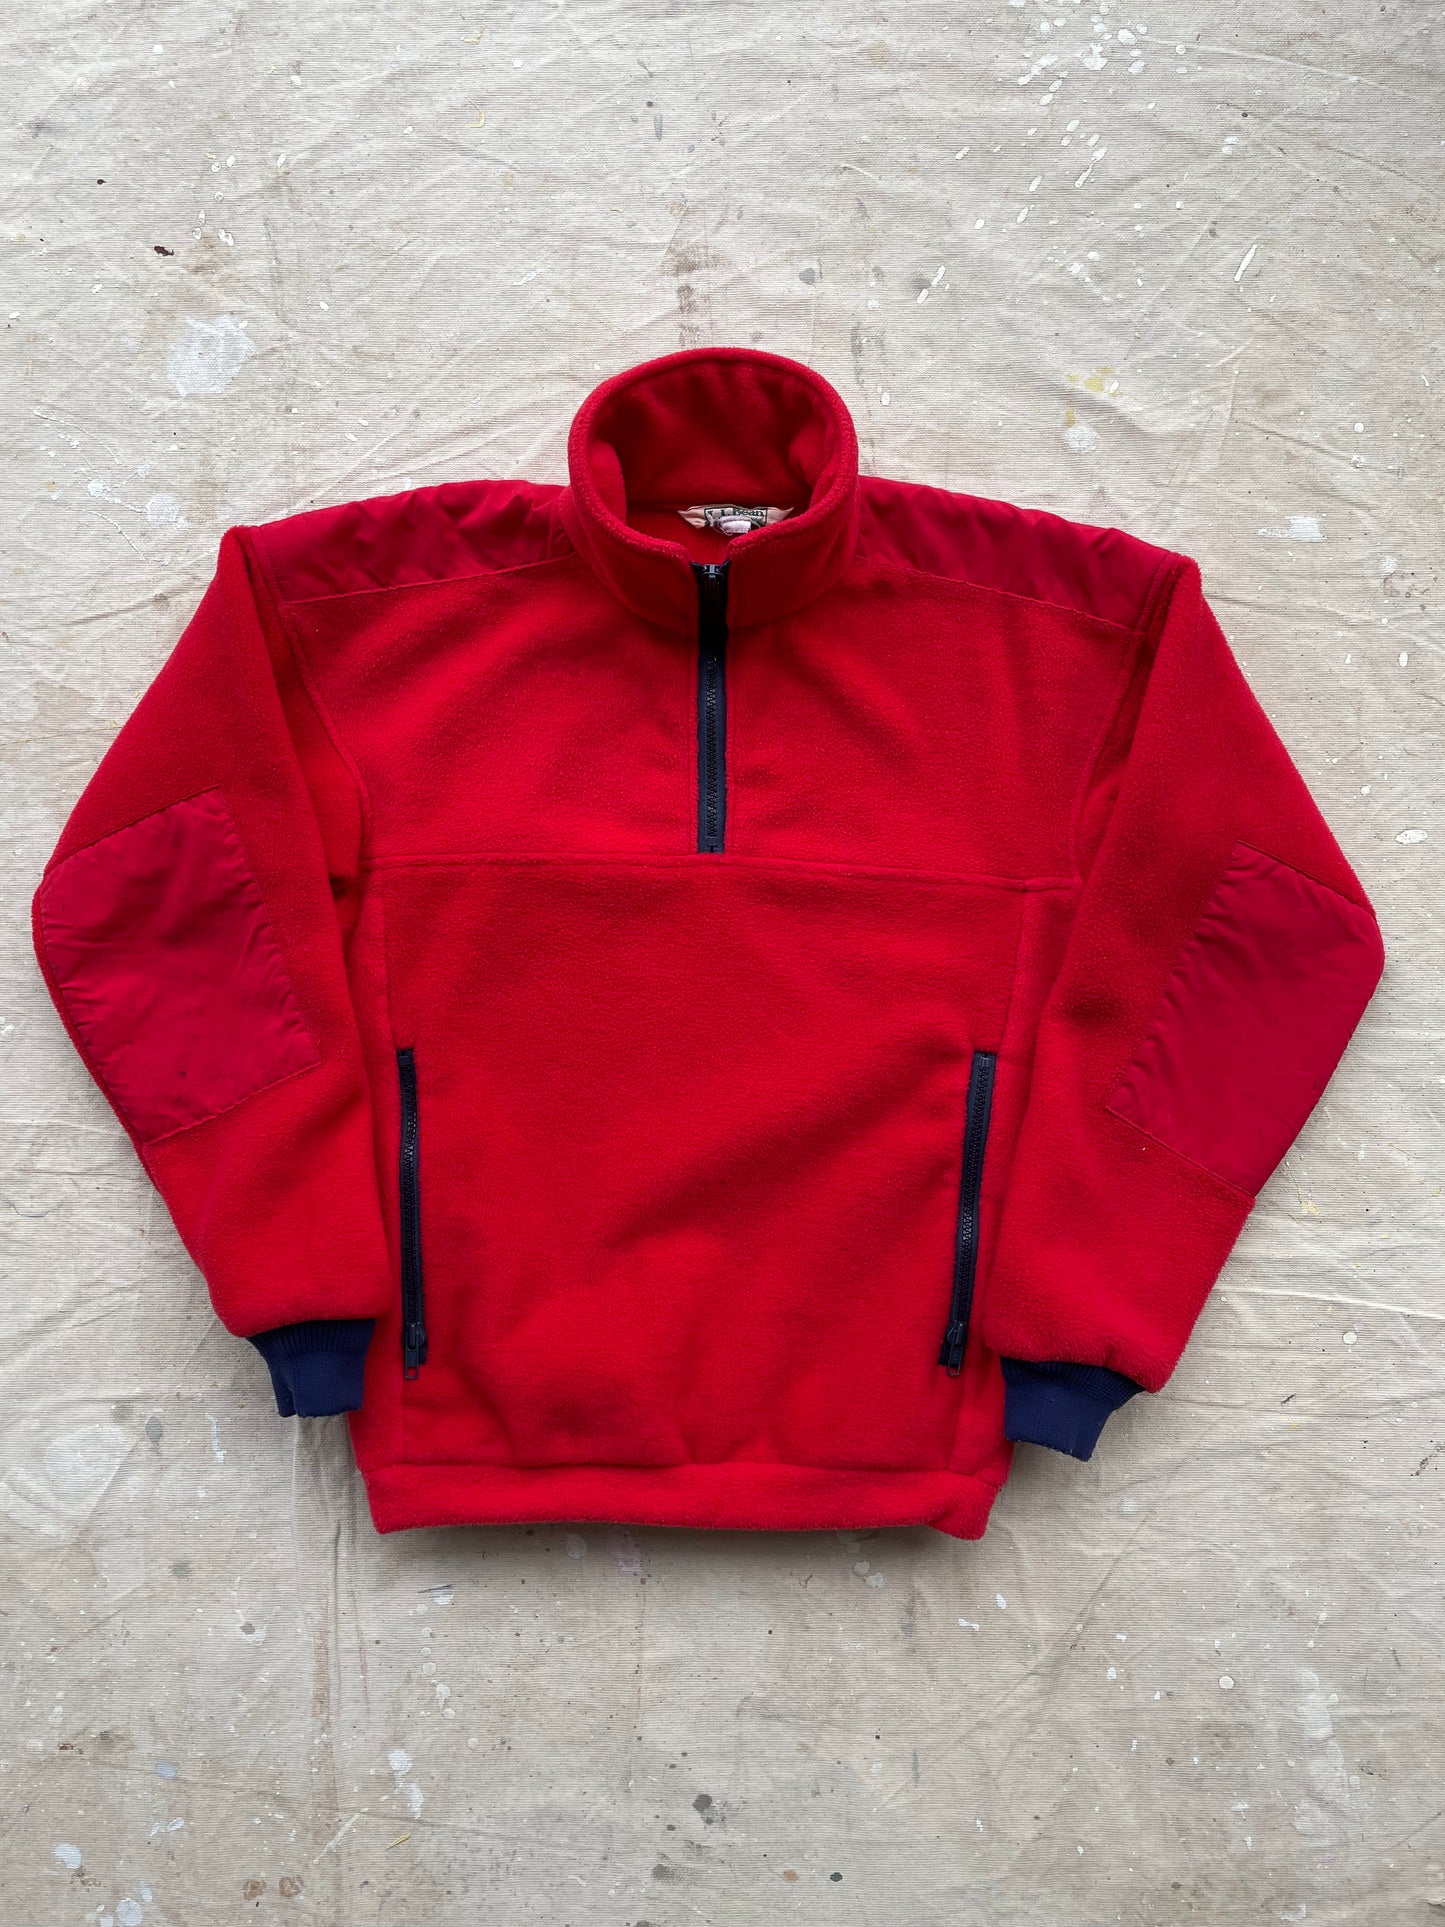 L.L. Bean Ski Style Fleece Jacket—[M]